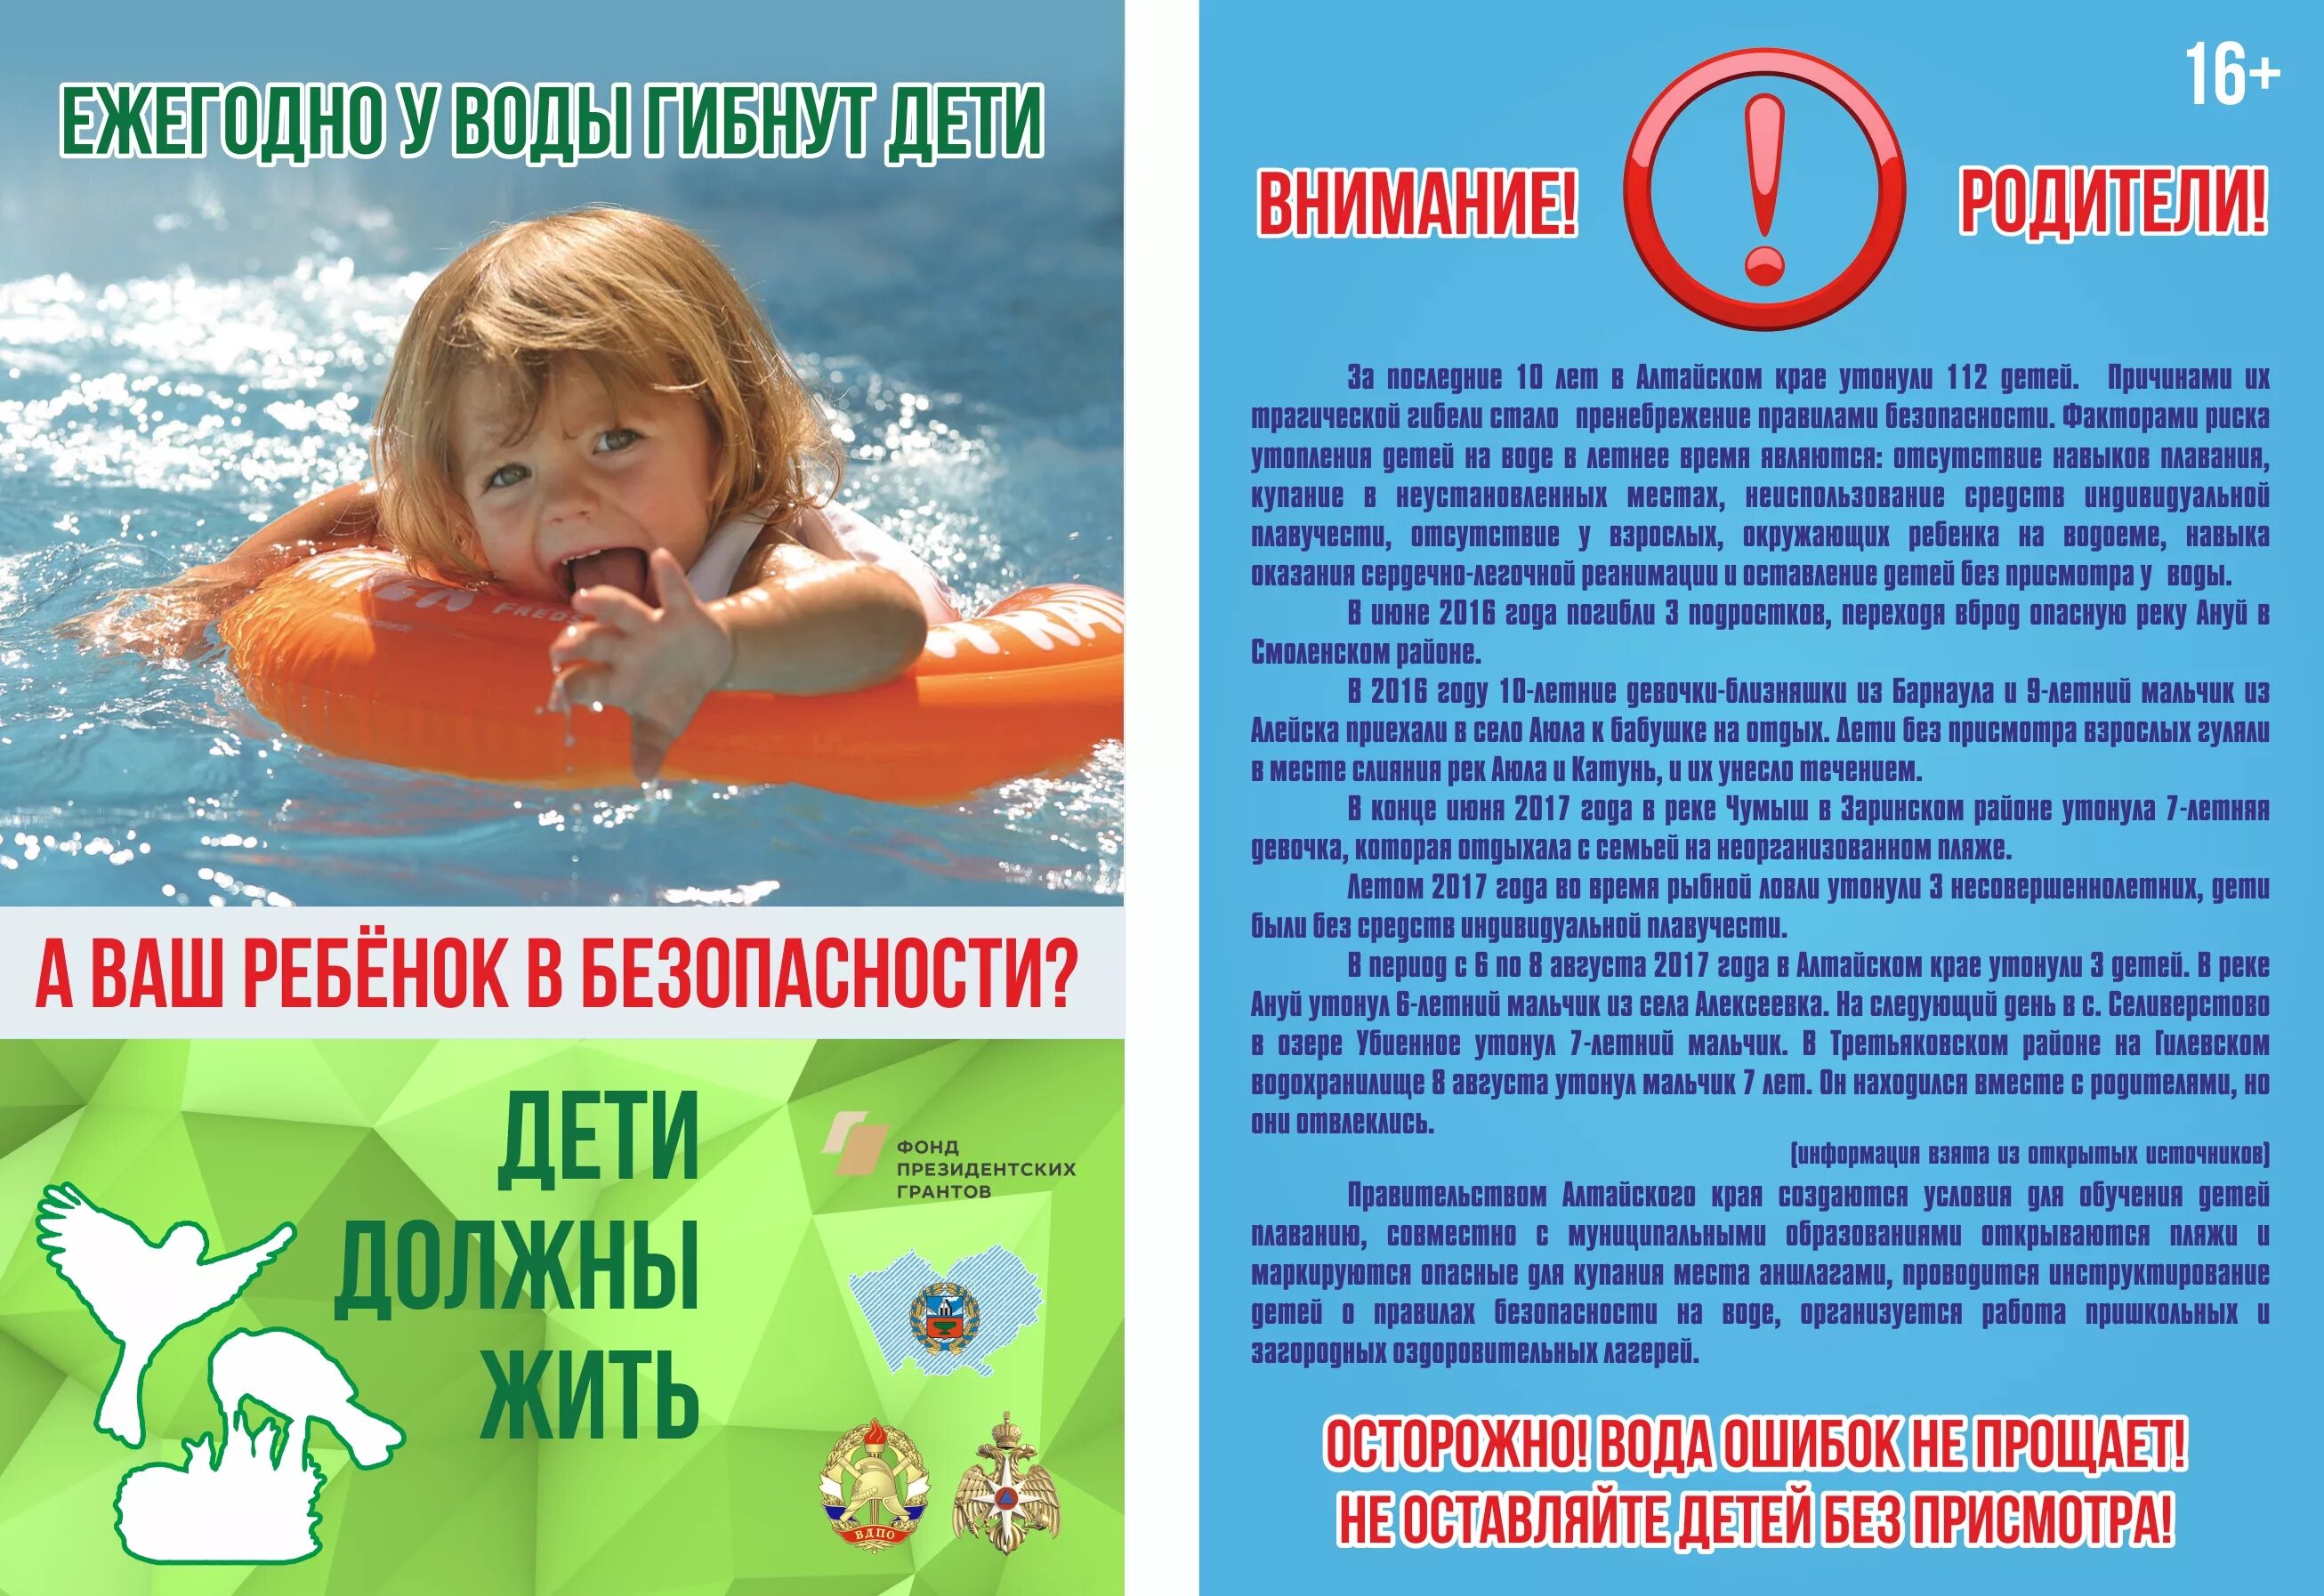 Каждый год опасность. Безопасность на водоемах летом для детей. Безопасность на вордоемахдля детей. Безопасность на воде для детей. Безопасность детей на водоемах в летний период.